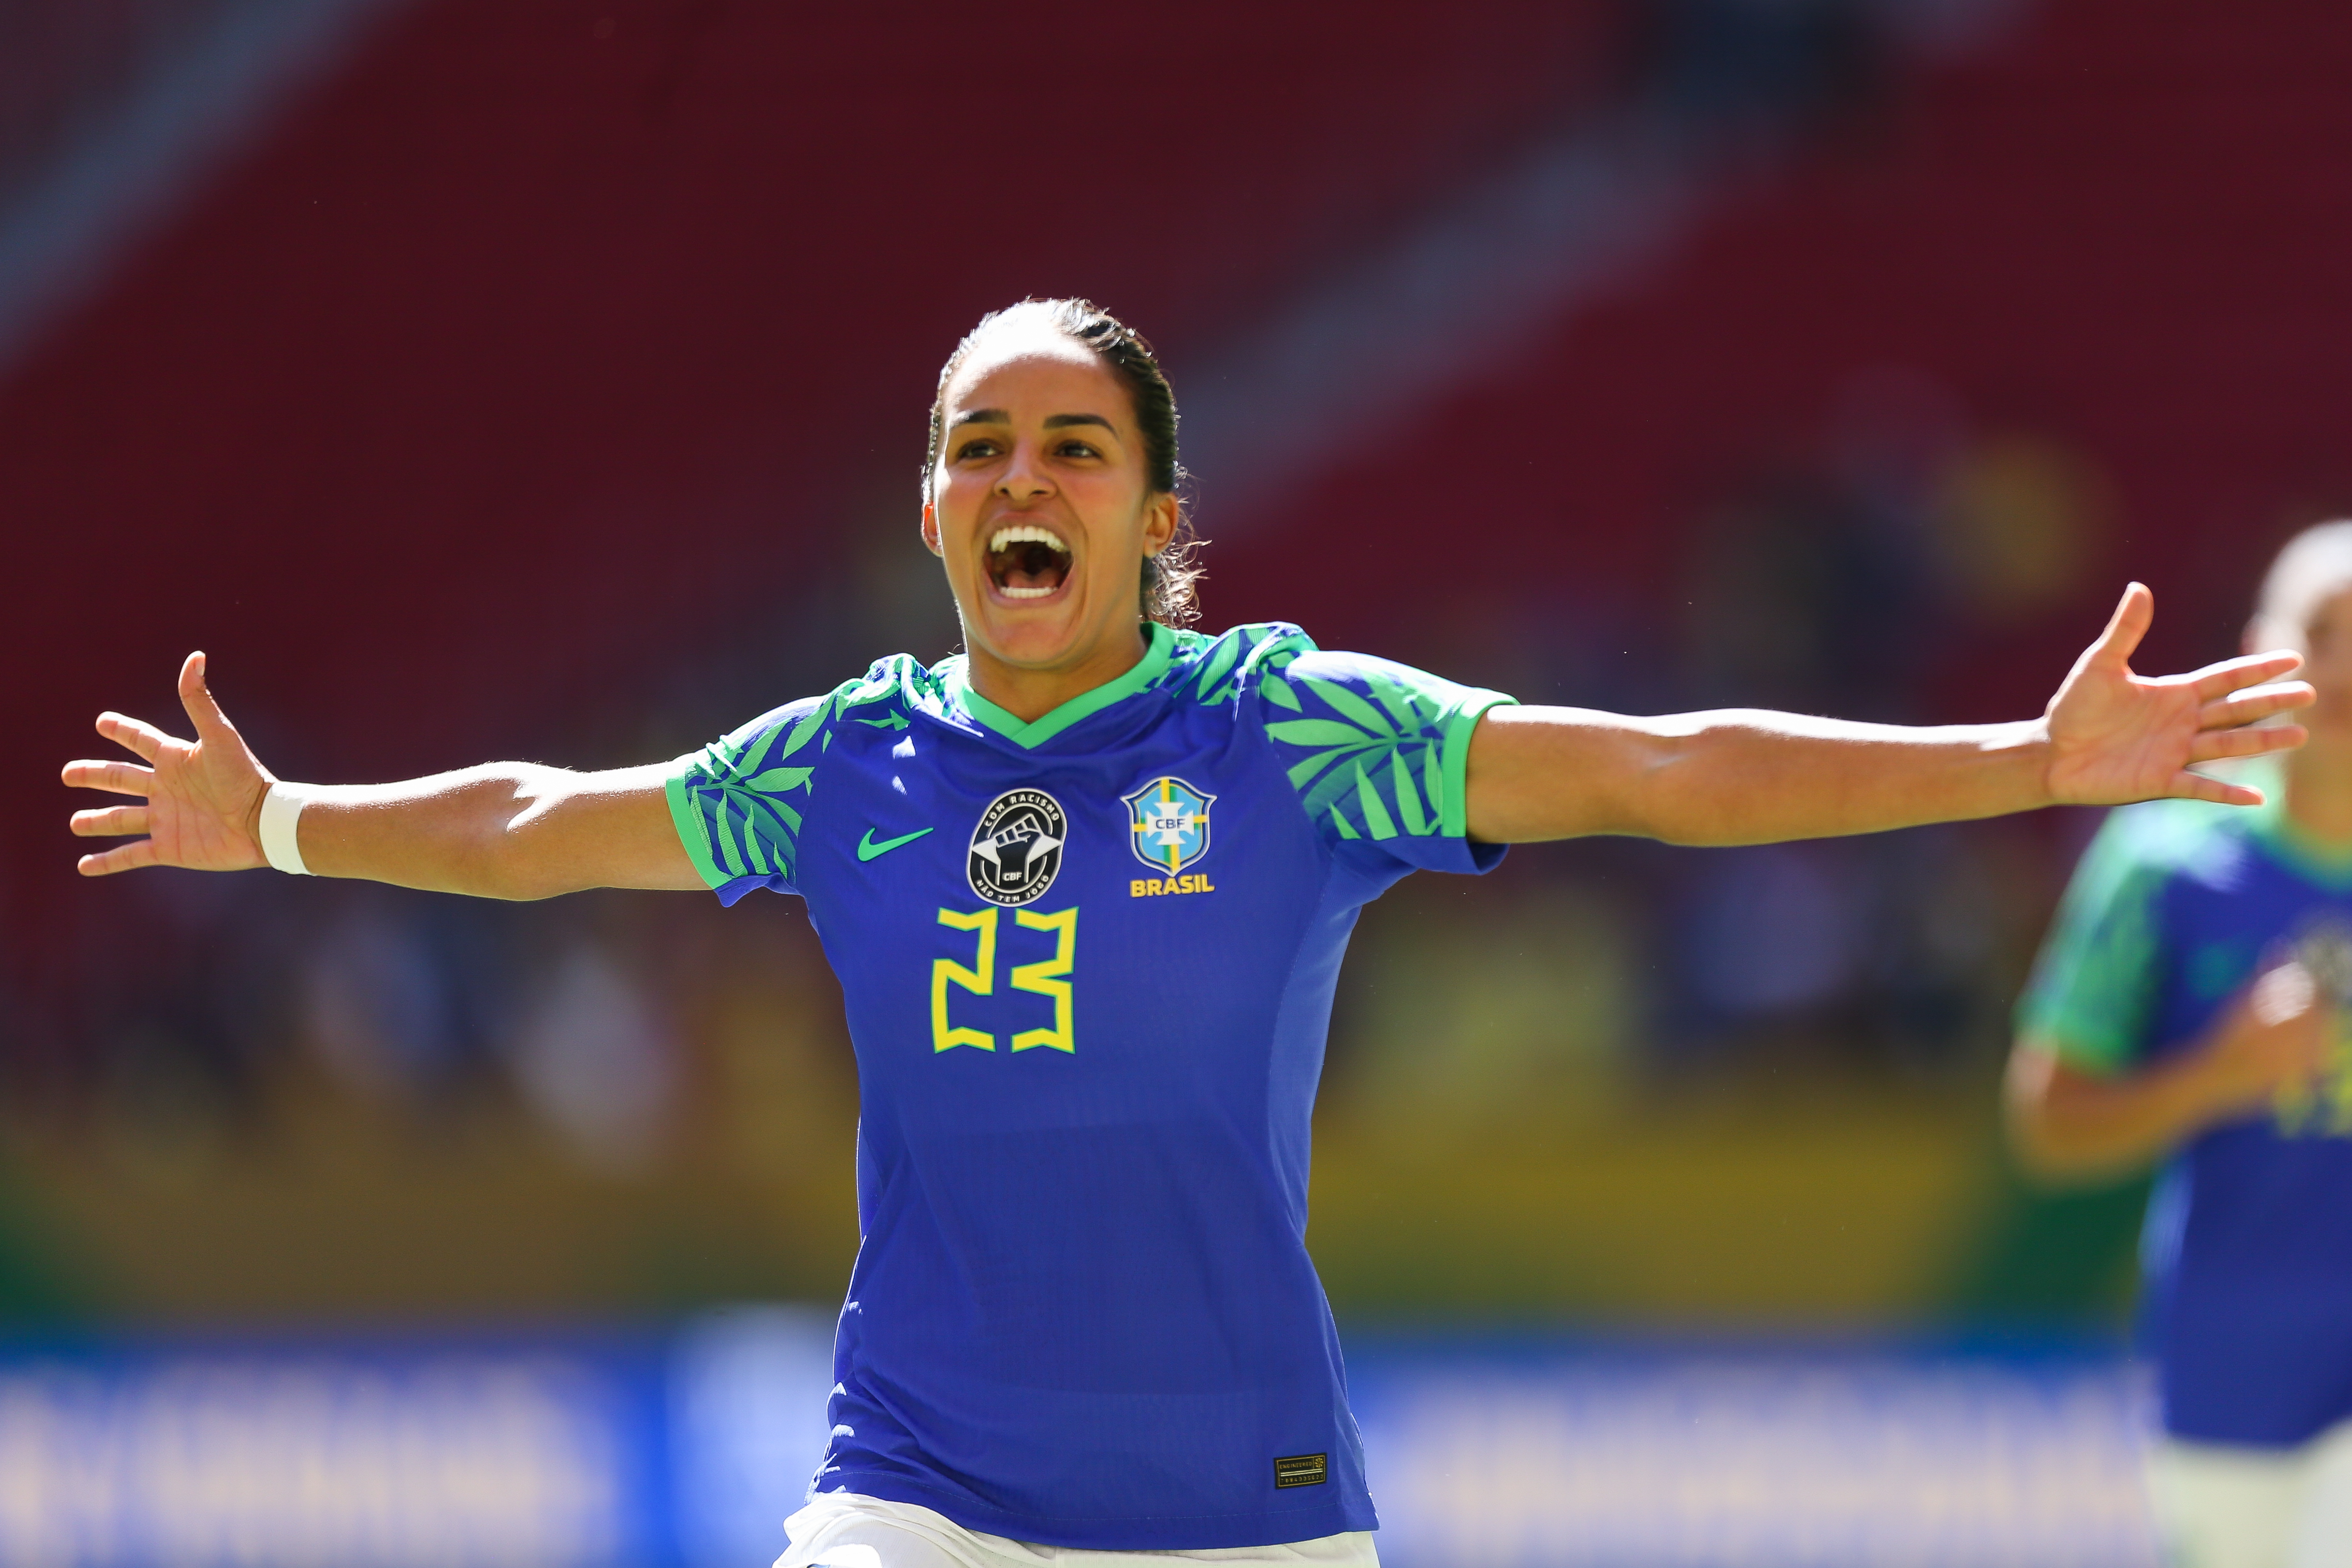 Copa do Mundo feminina: conheça as jogadoras que defenderão o